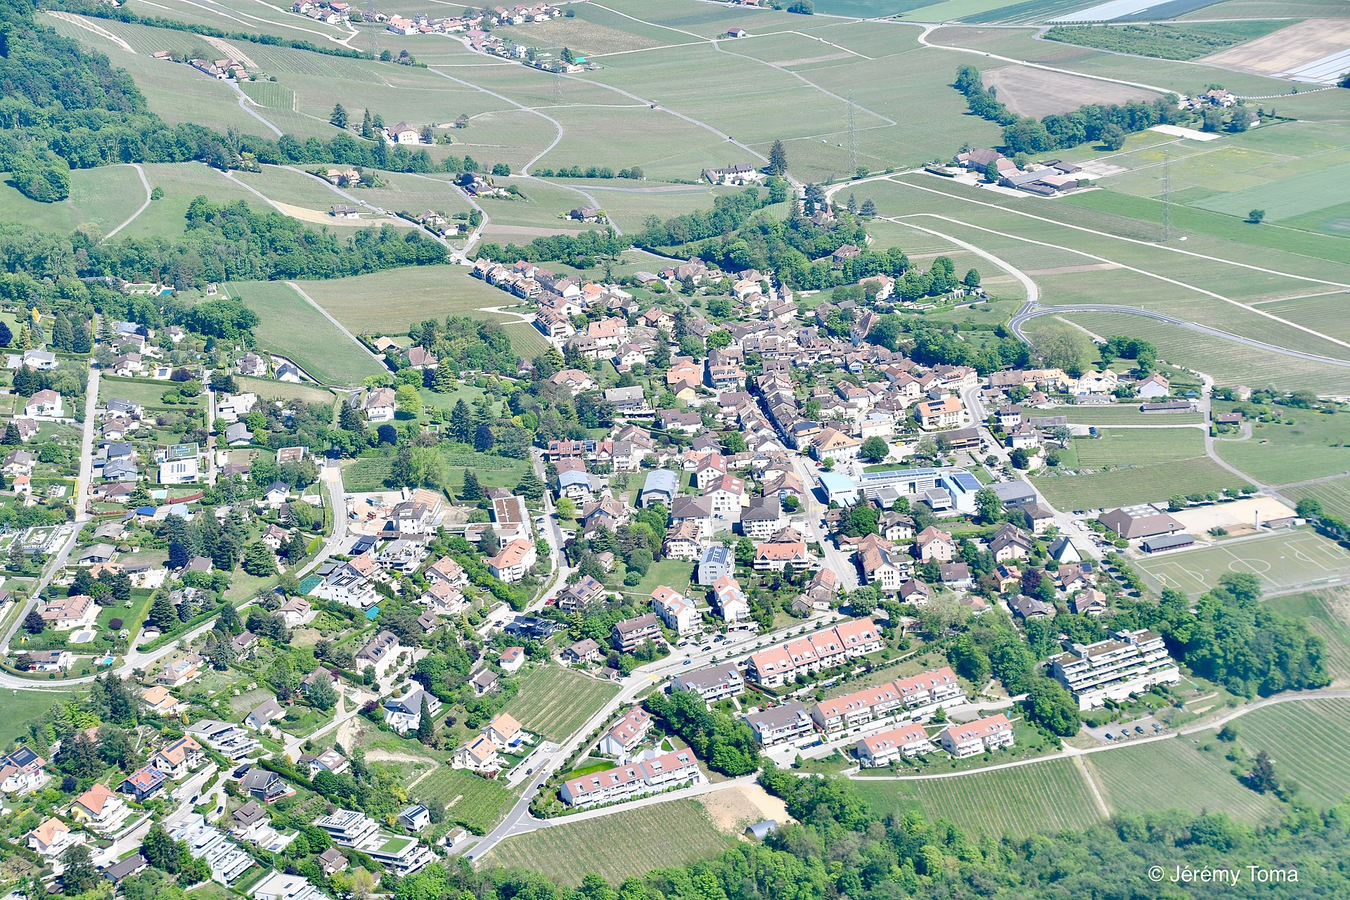 Le village de Begnins (VD) vue depuis un avion.